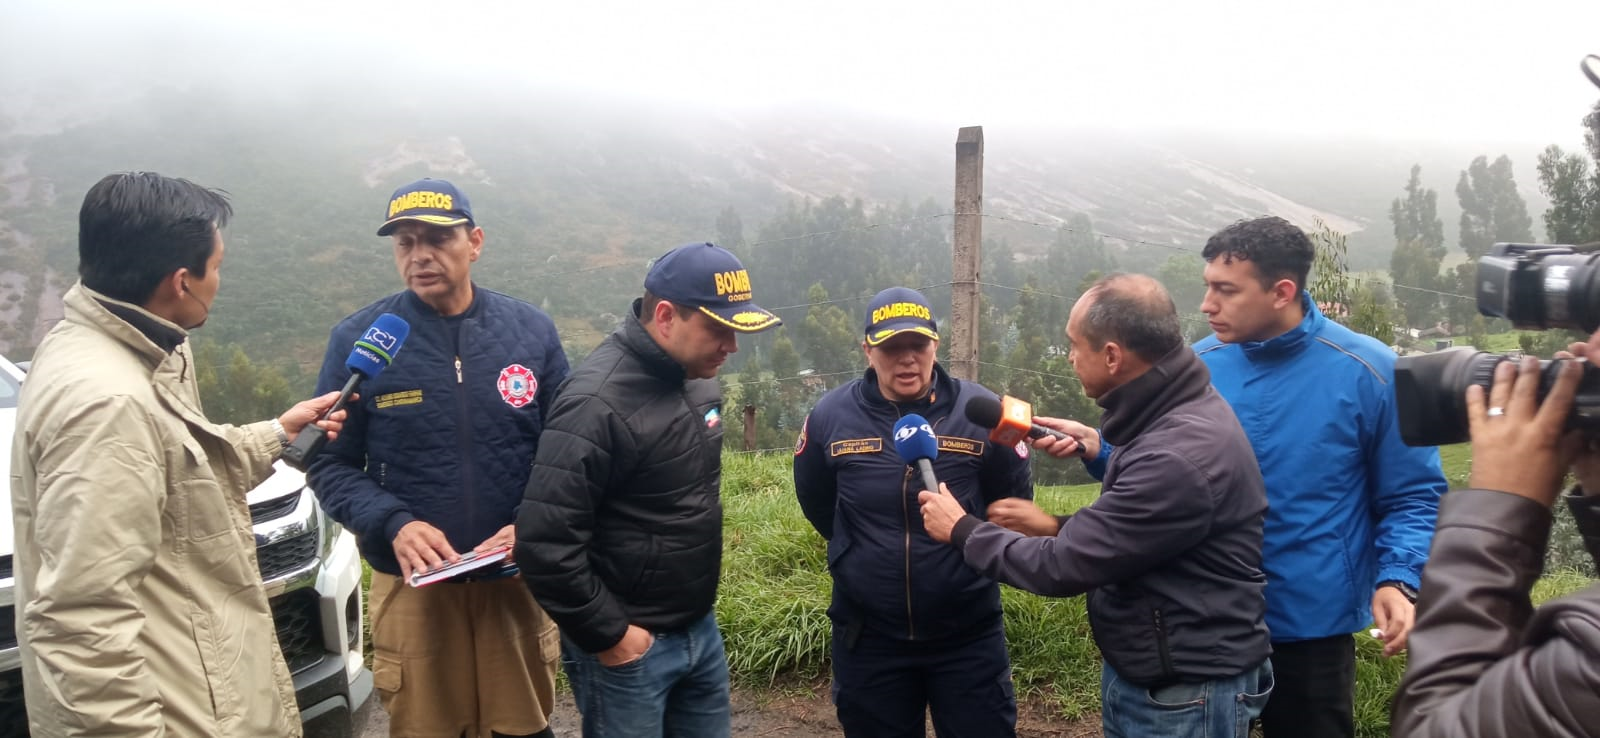 Asciende a 21 el número de fallecidos por explosión en una mina en Colombia